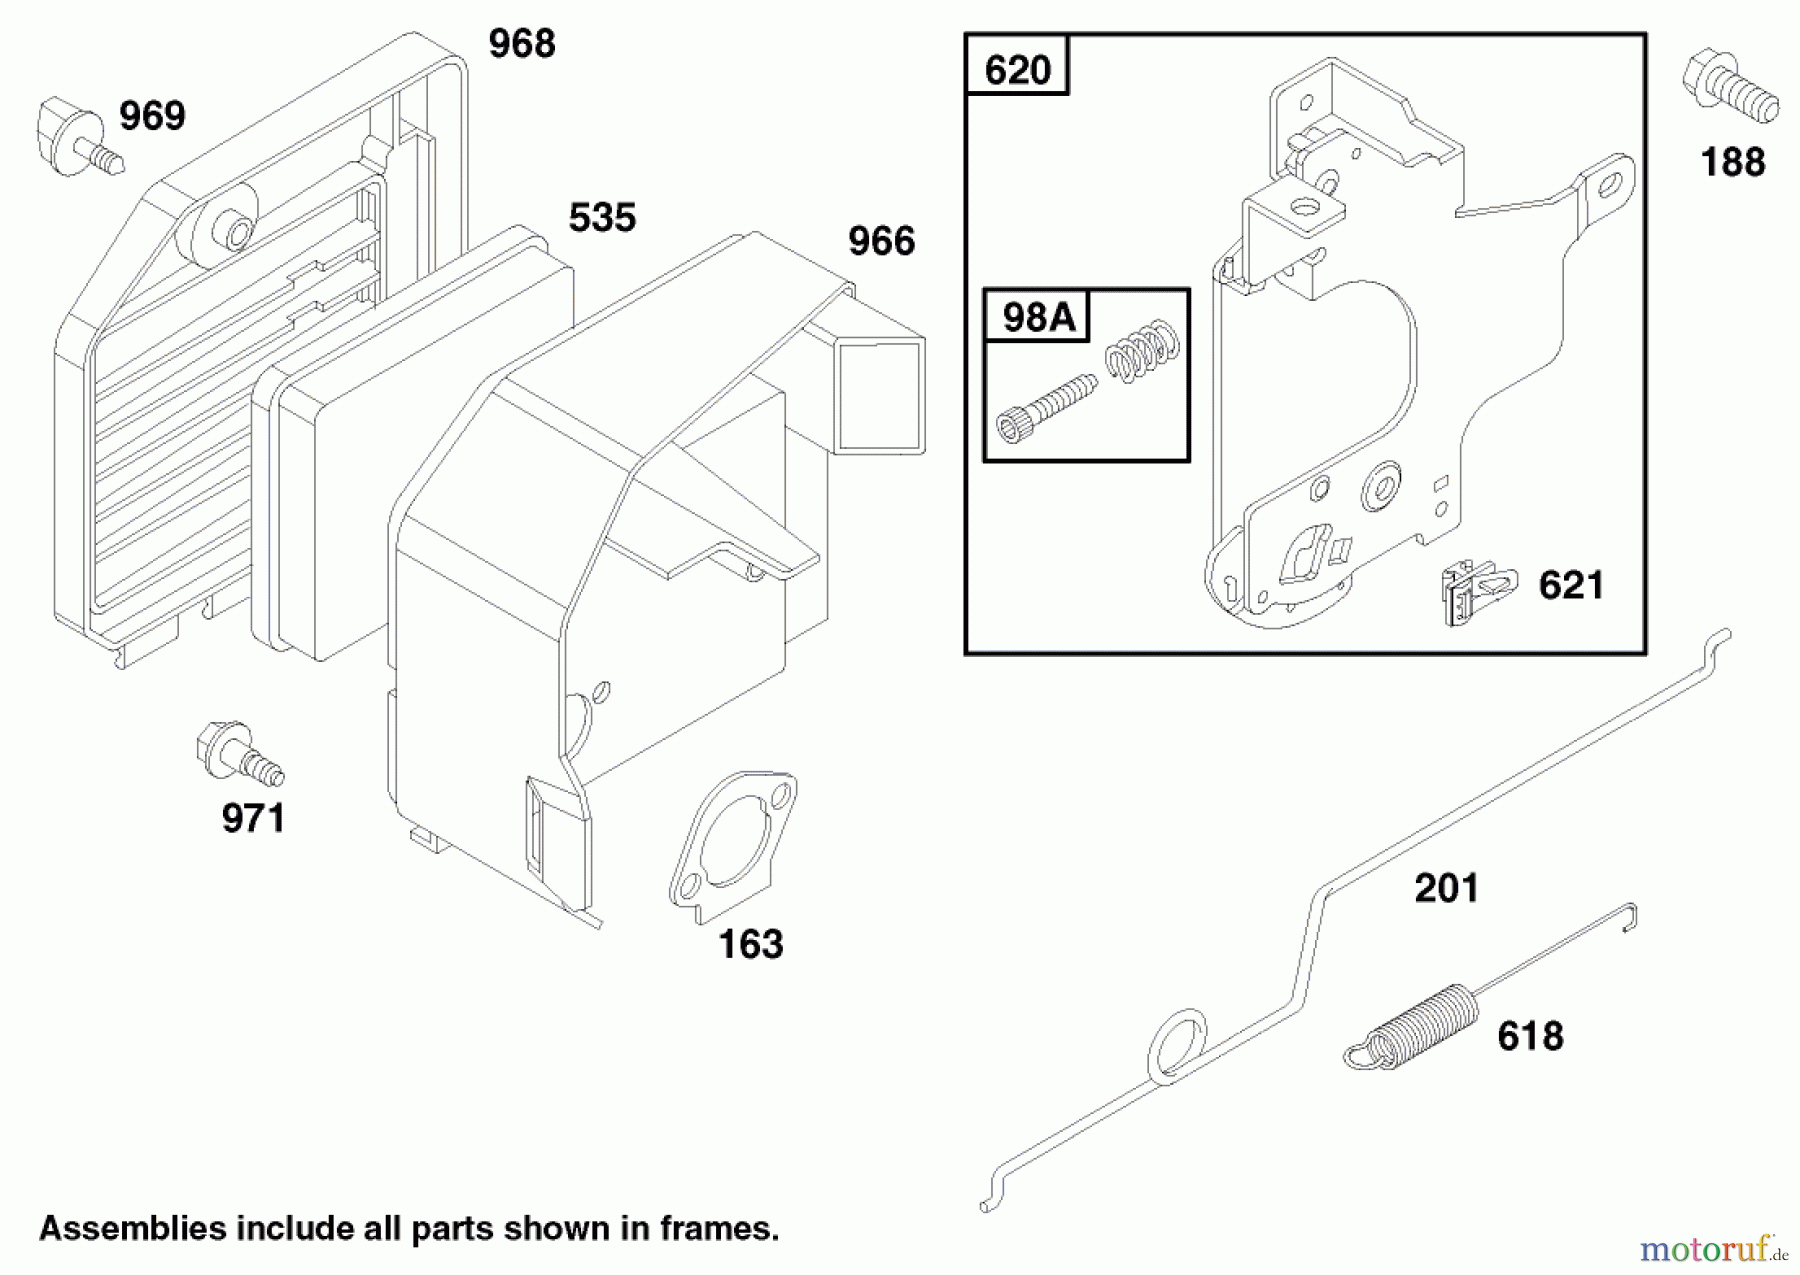  Toro Neu Mowers, Walk-Behind Seite 2 22142 - Toro Lawnmower, 1997 (7900001-7999999) ENGINE GTS 150 #3